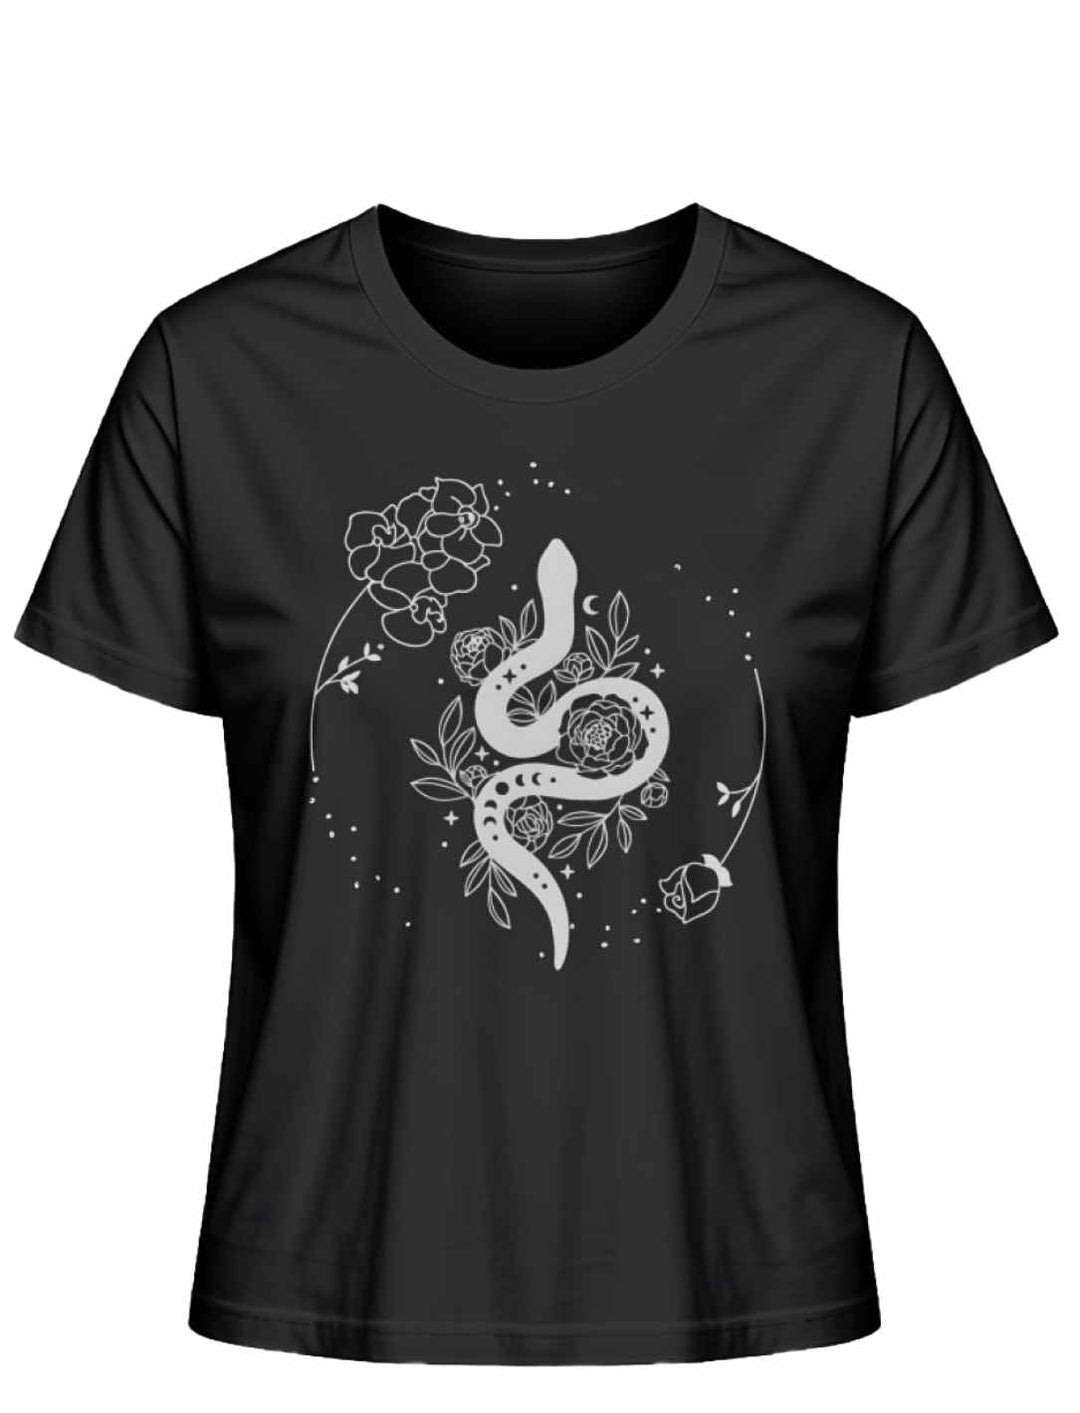 Snake of Wisdom T-Shirt in Schwarz auf weißem Hintergrund, zeigt eine detailreiche Darstellung einer Schlange und floralen Motiven, symbolisch für Wissen und Transformation.